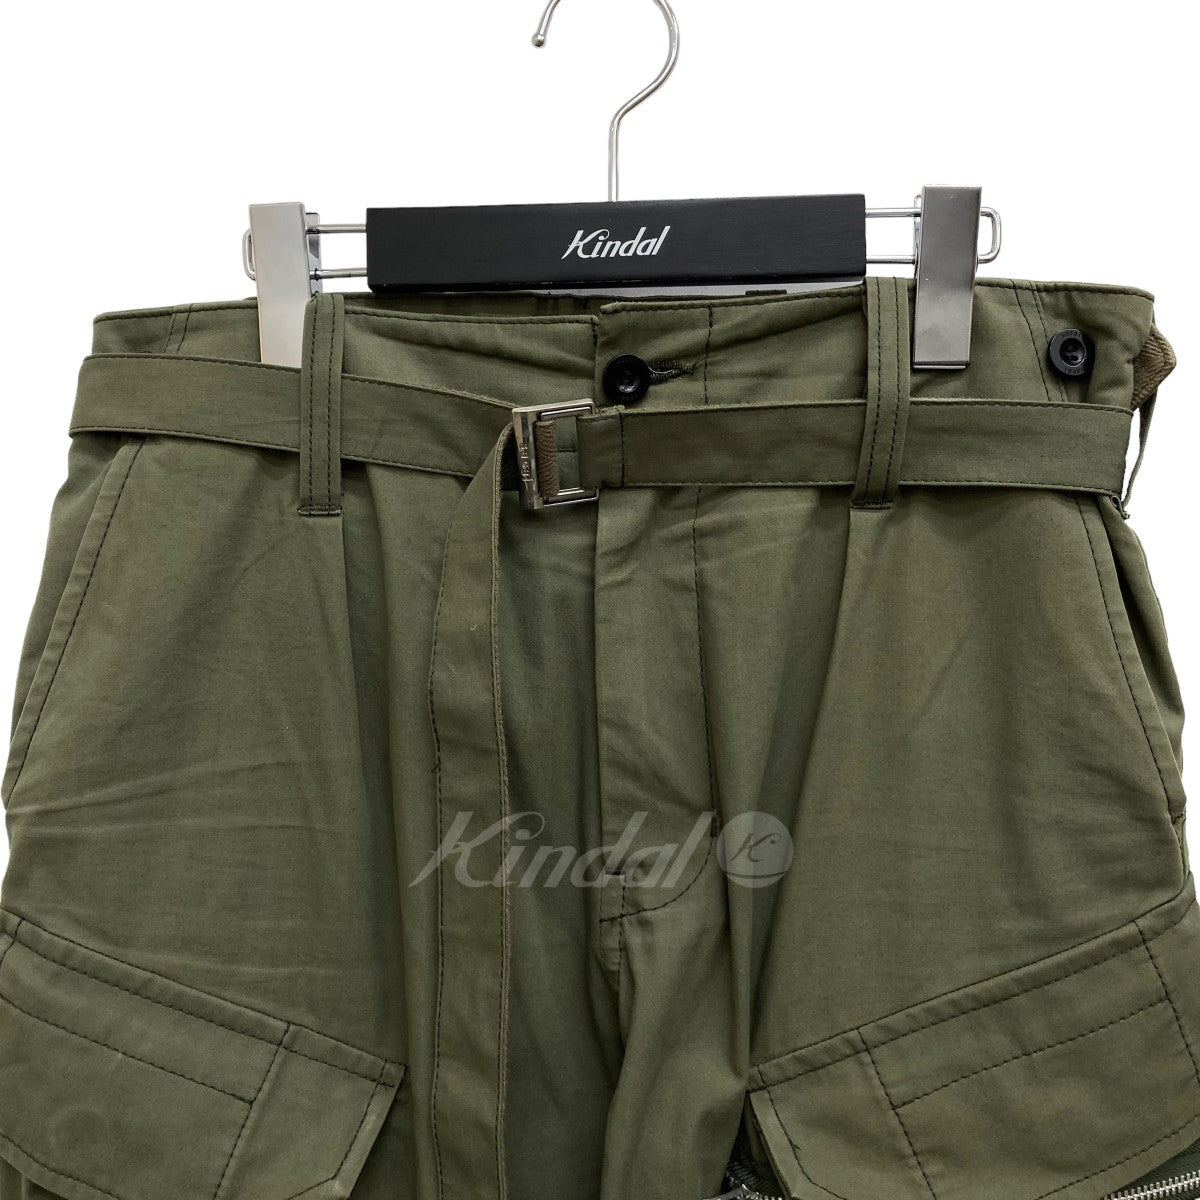 sacai(サカイ) 21AW Cotton Oxford Pants カーゴパンツ 21-02596M